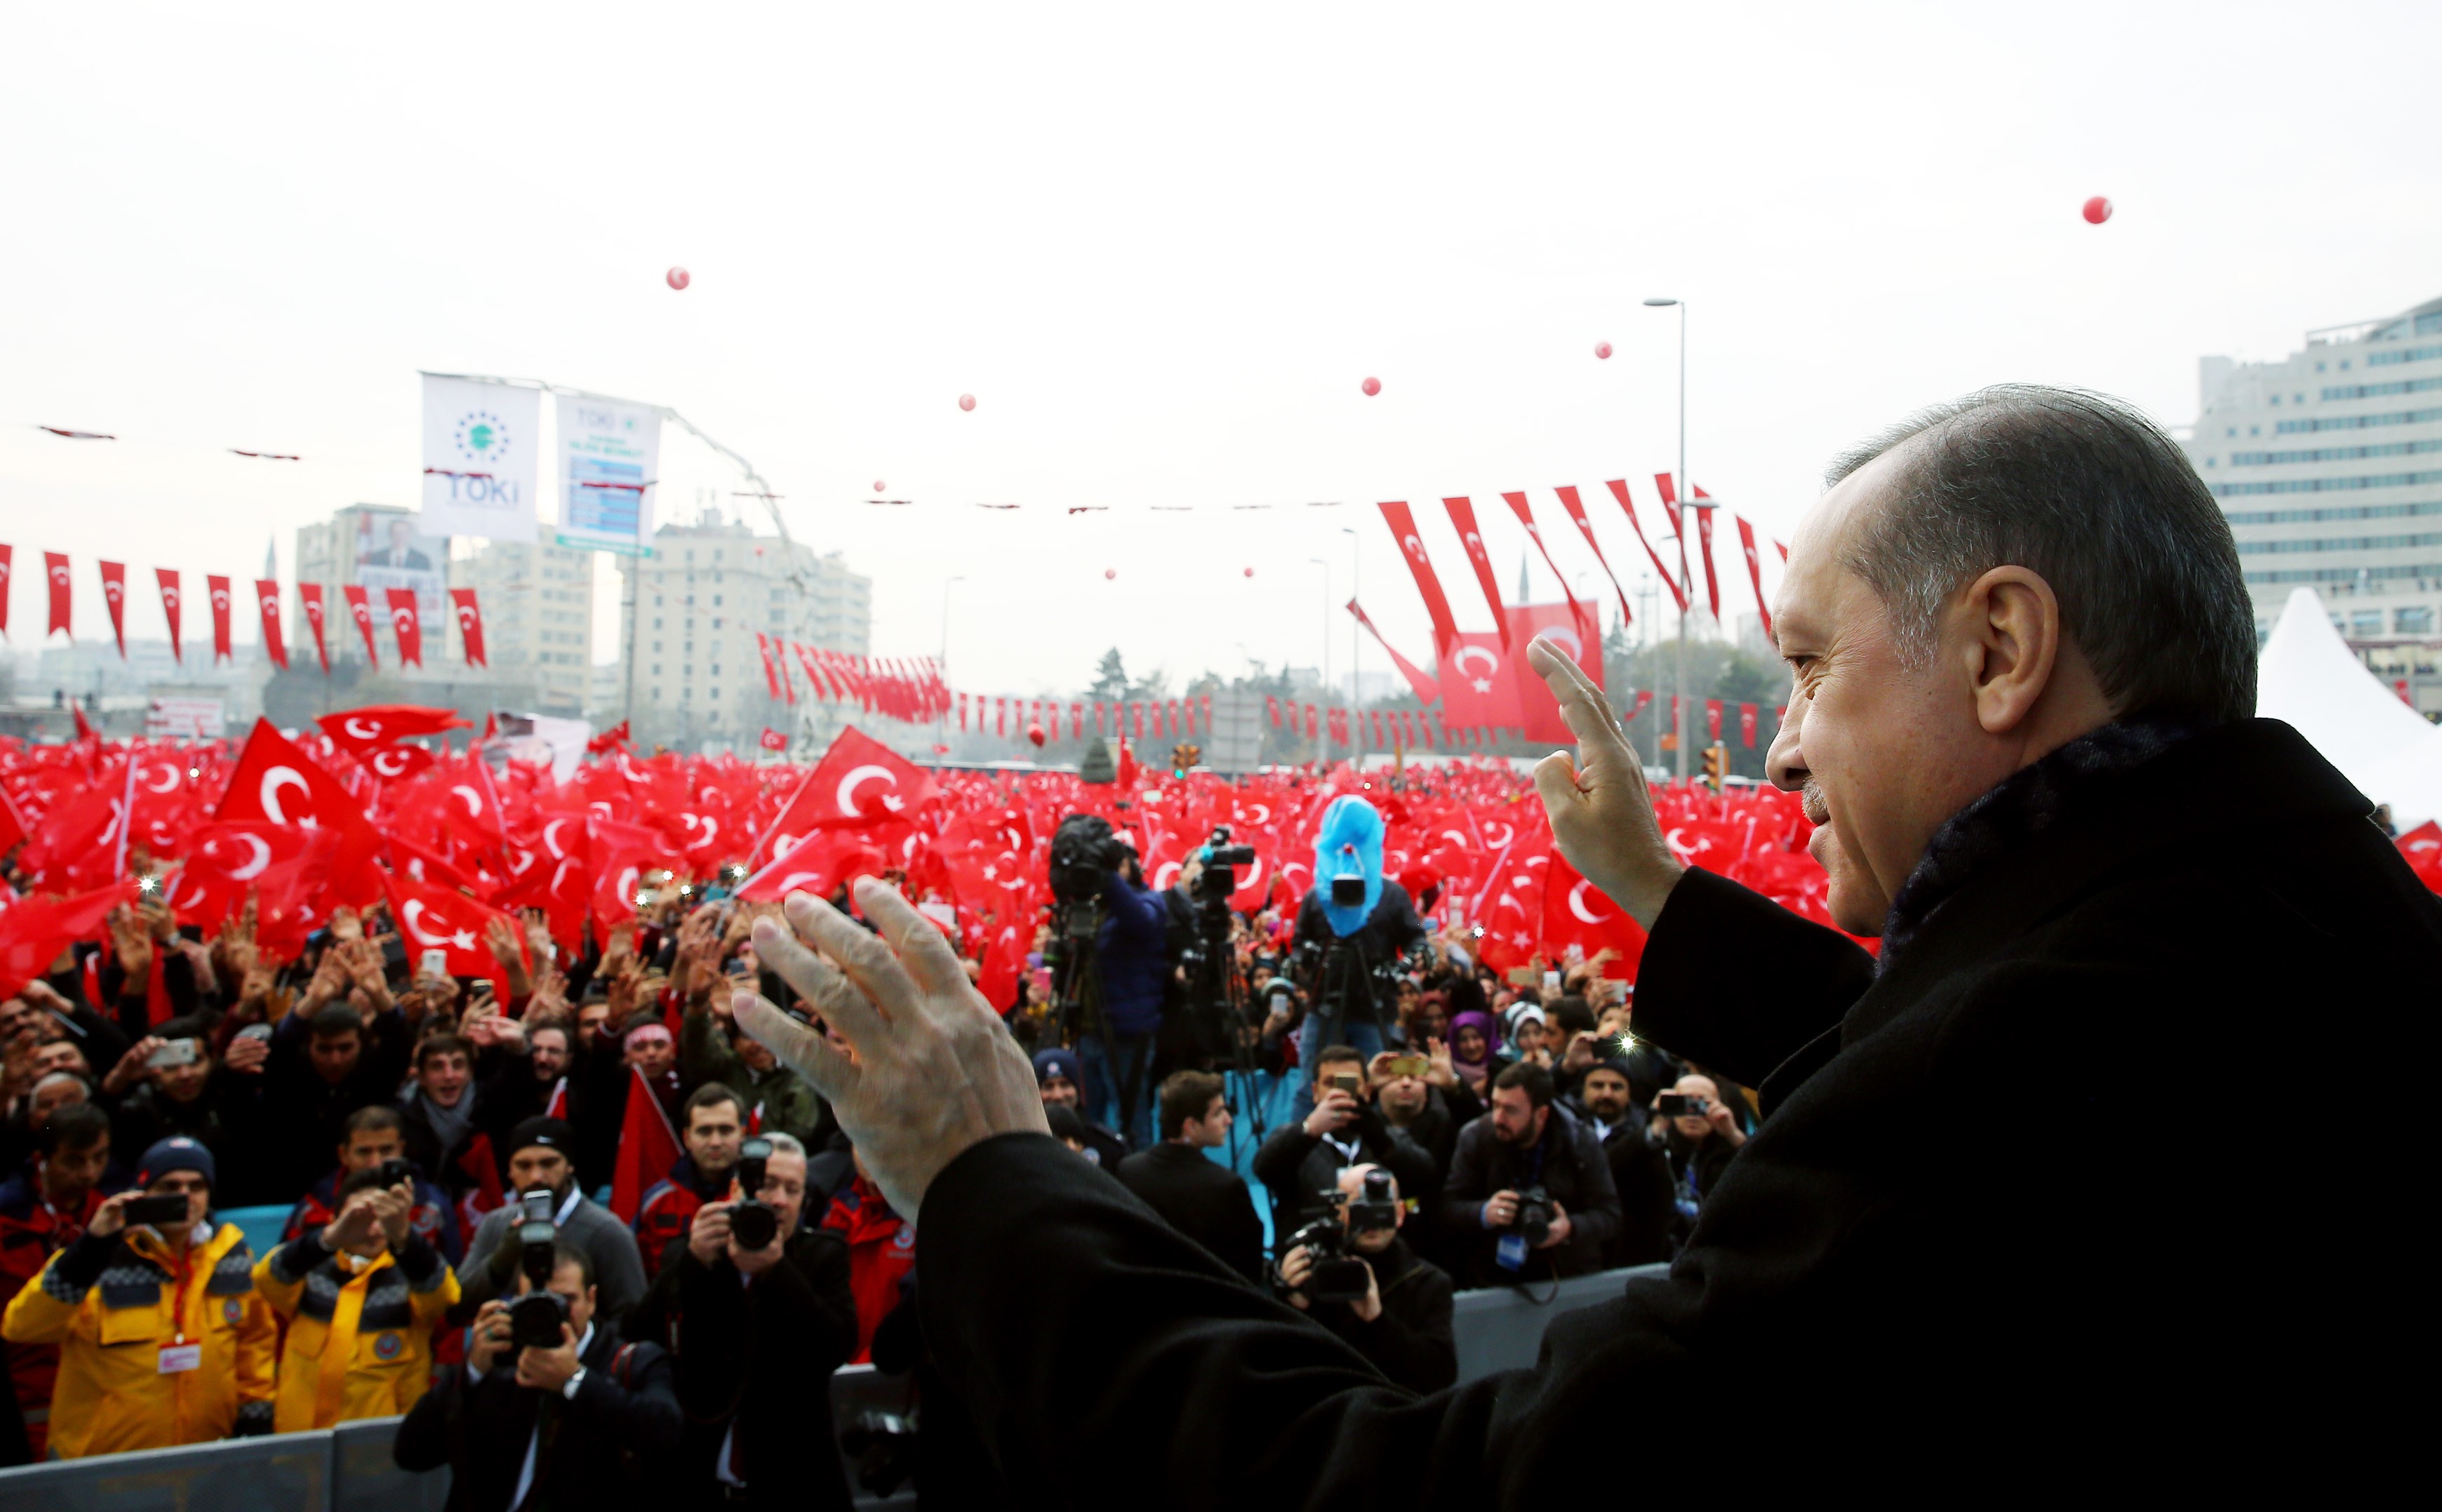 Cumhurbaşkanı Erdoğan: “Bu şehitlerin varisleri eğer idam istiyorlarsa bununla ilgili olarak devletin af yetkisi yoktur”